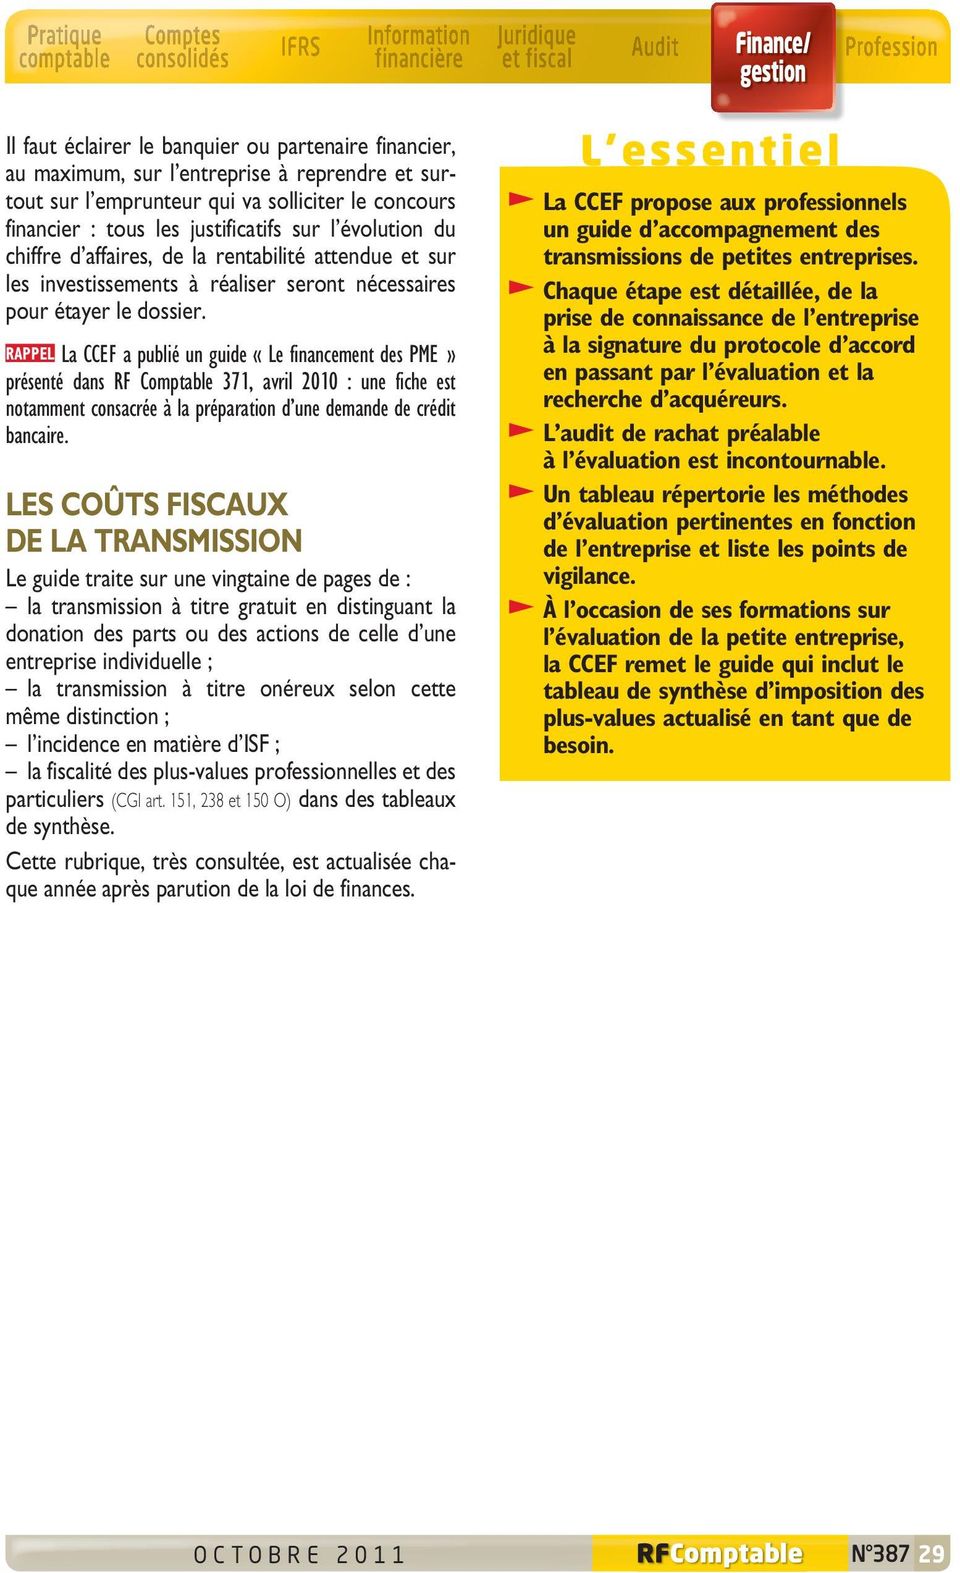 RAPPEL La CCEF a publié un guide «Le financement des PME» présenté dans RF Comptable 371, avril 2010 : une fiche est notamment consacrée à la préparation d une demande de crédit bancaire.